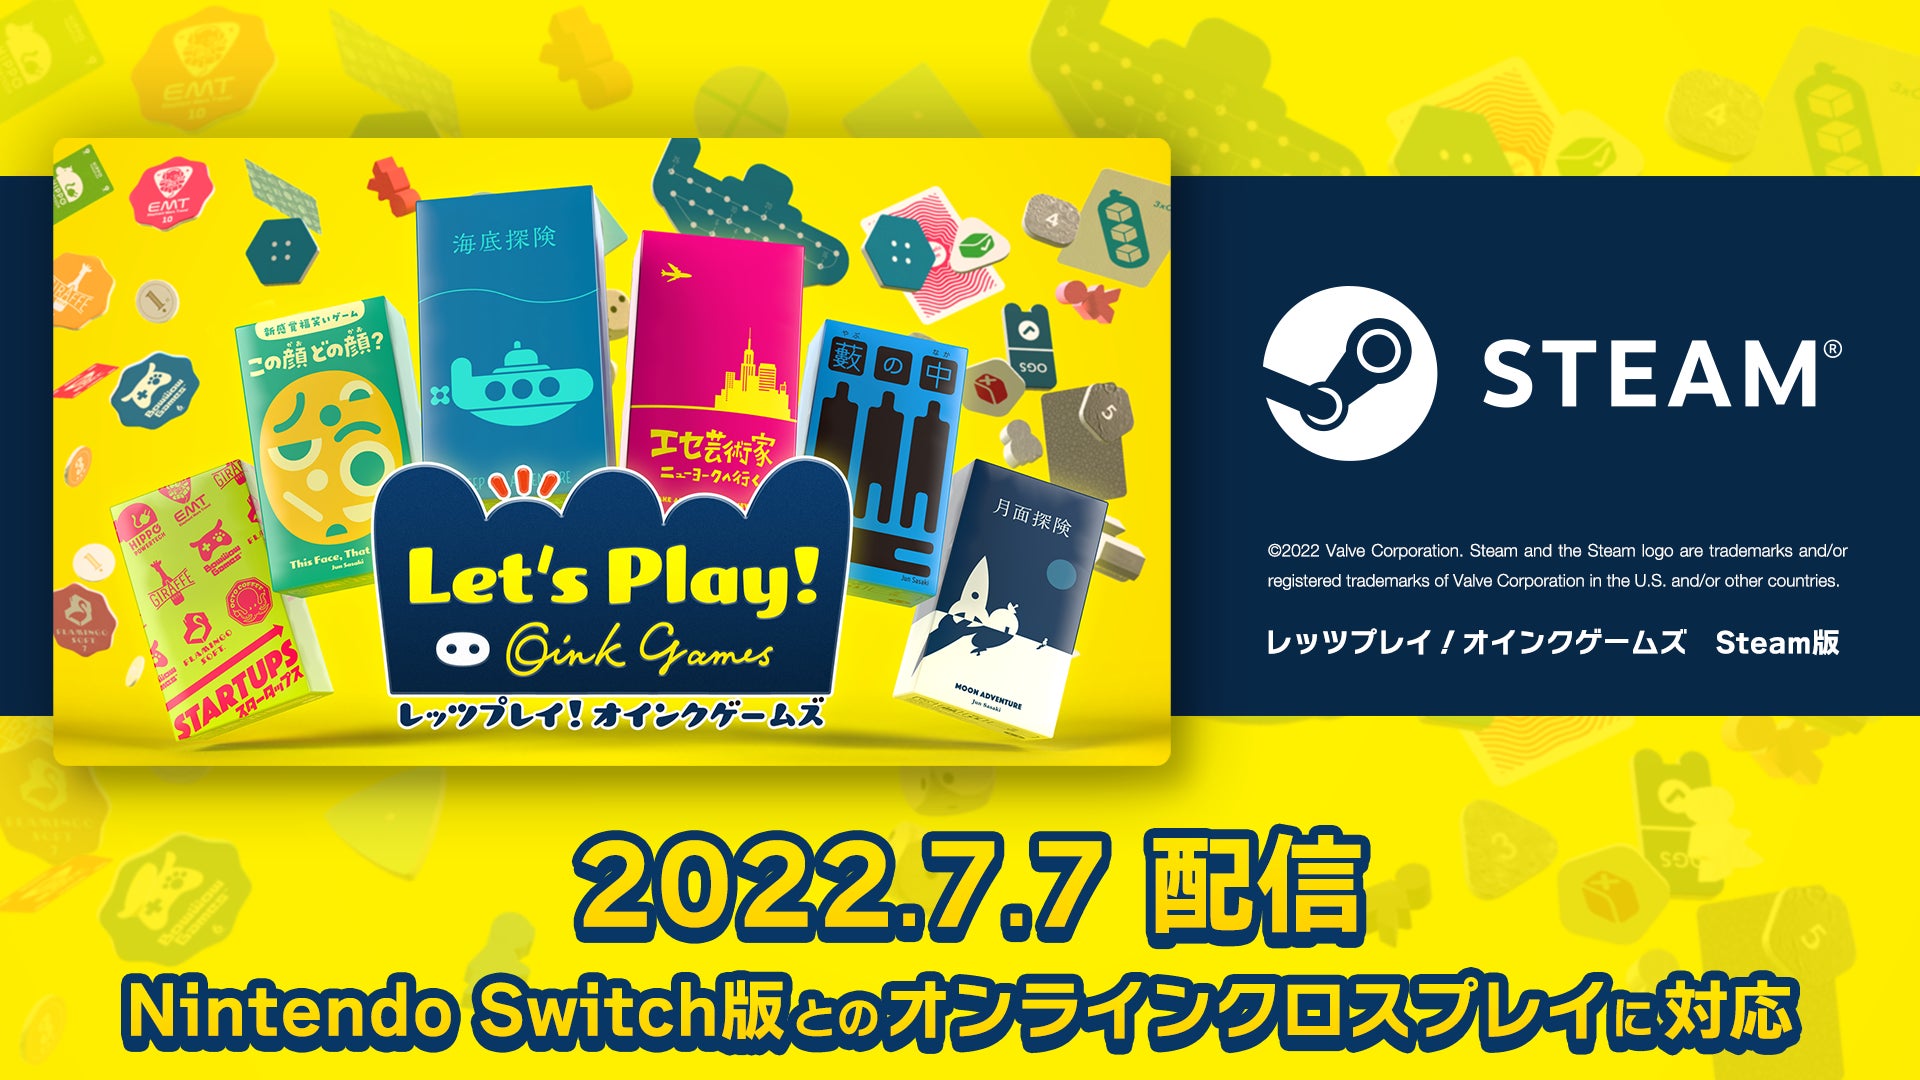 Nintendo Switch ソフト「Fit Boxing 2 -リズム＆エクササイズ-」横浜流星さんを起用した撮り下ろしビジュアル公開のお知らせ